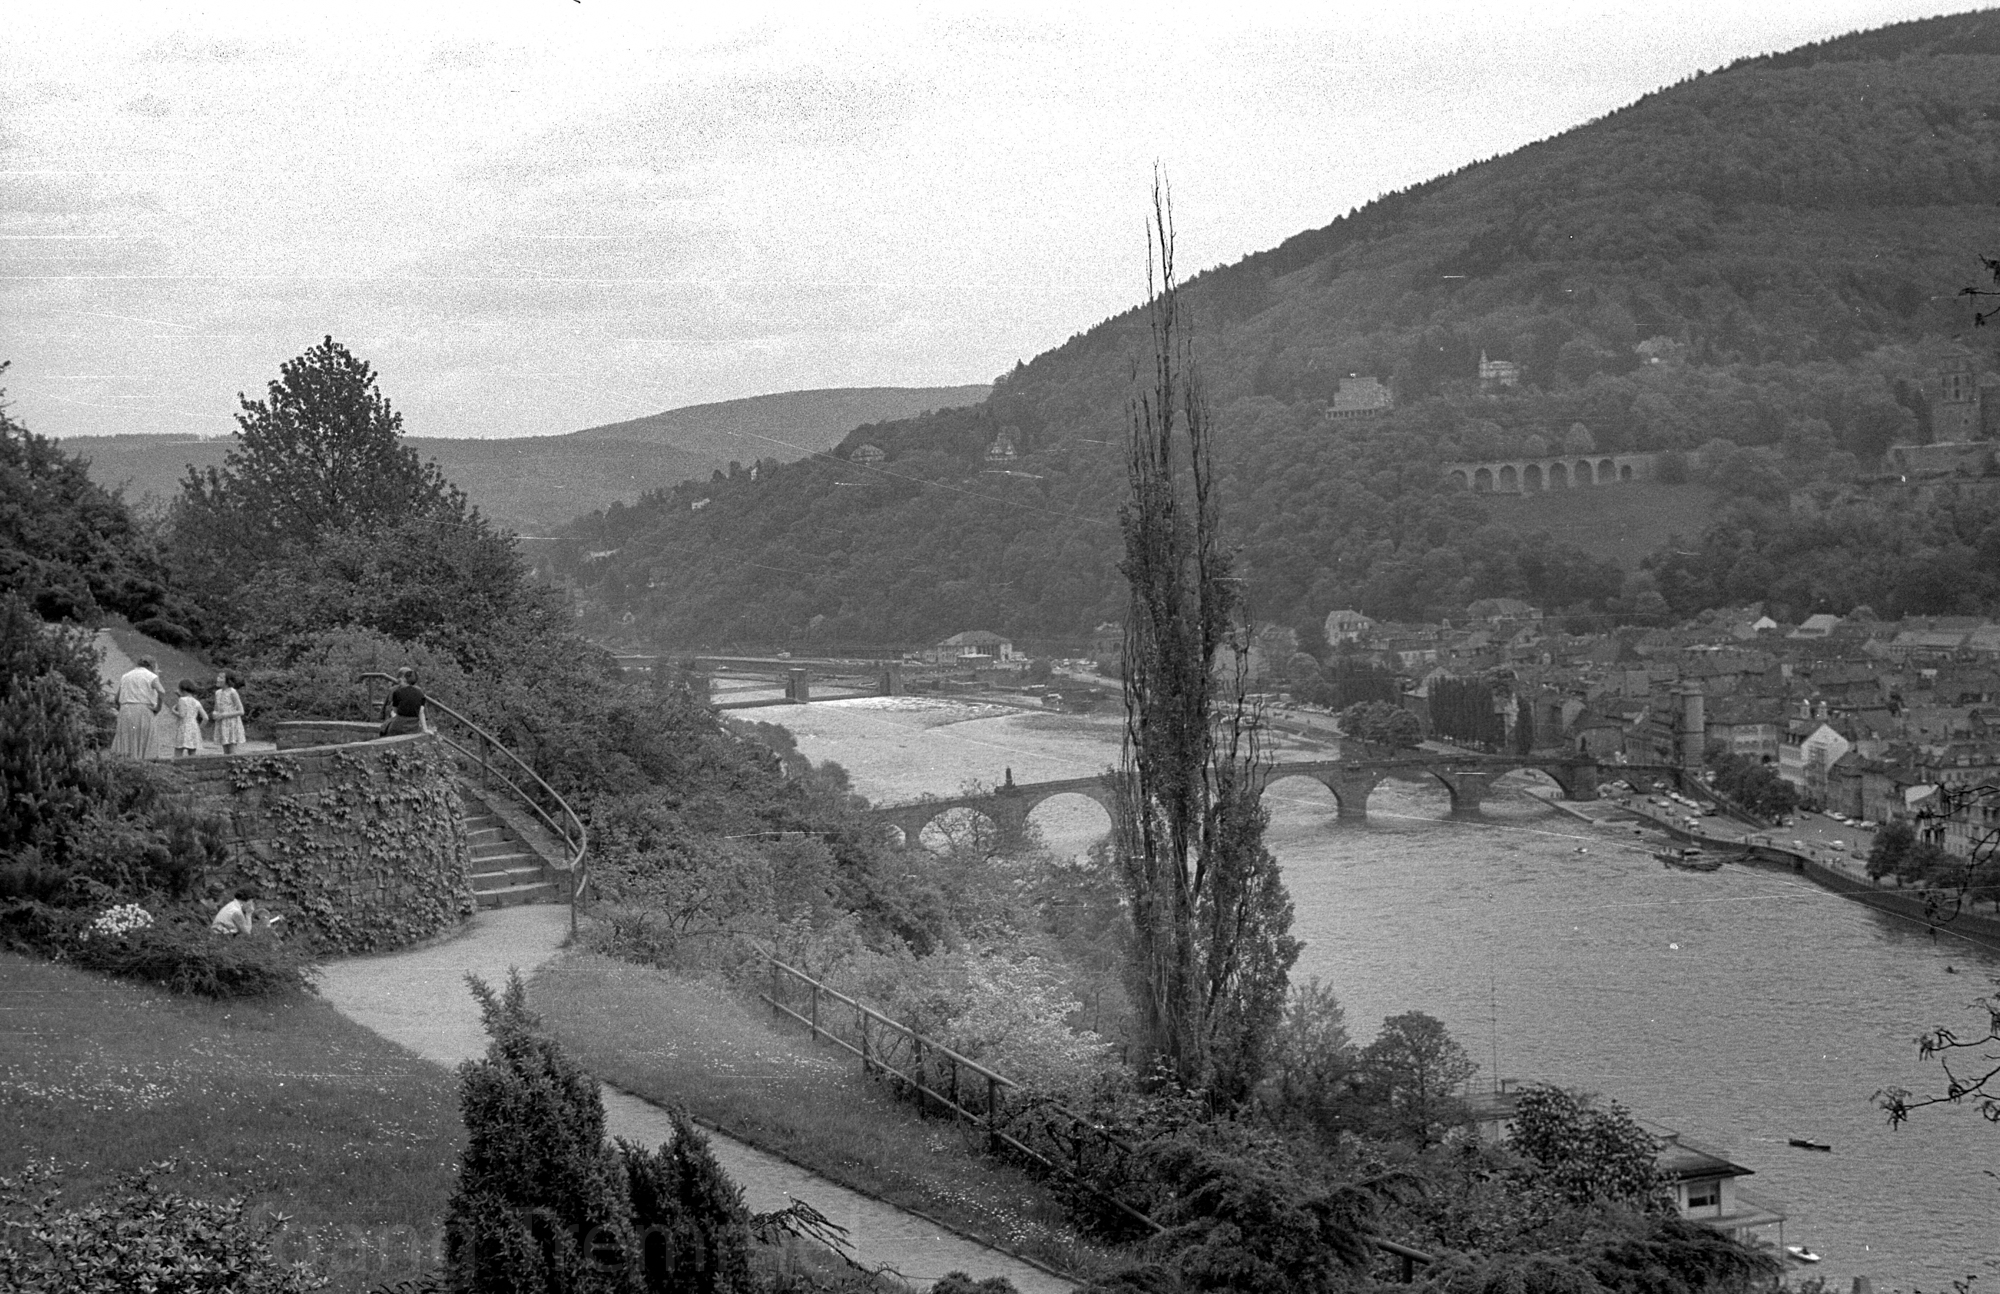 1962: Neckar-Bridge at Heidelberg